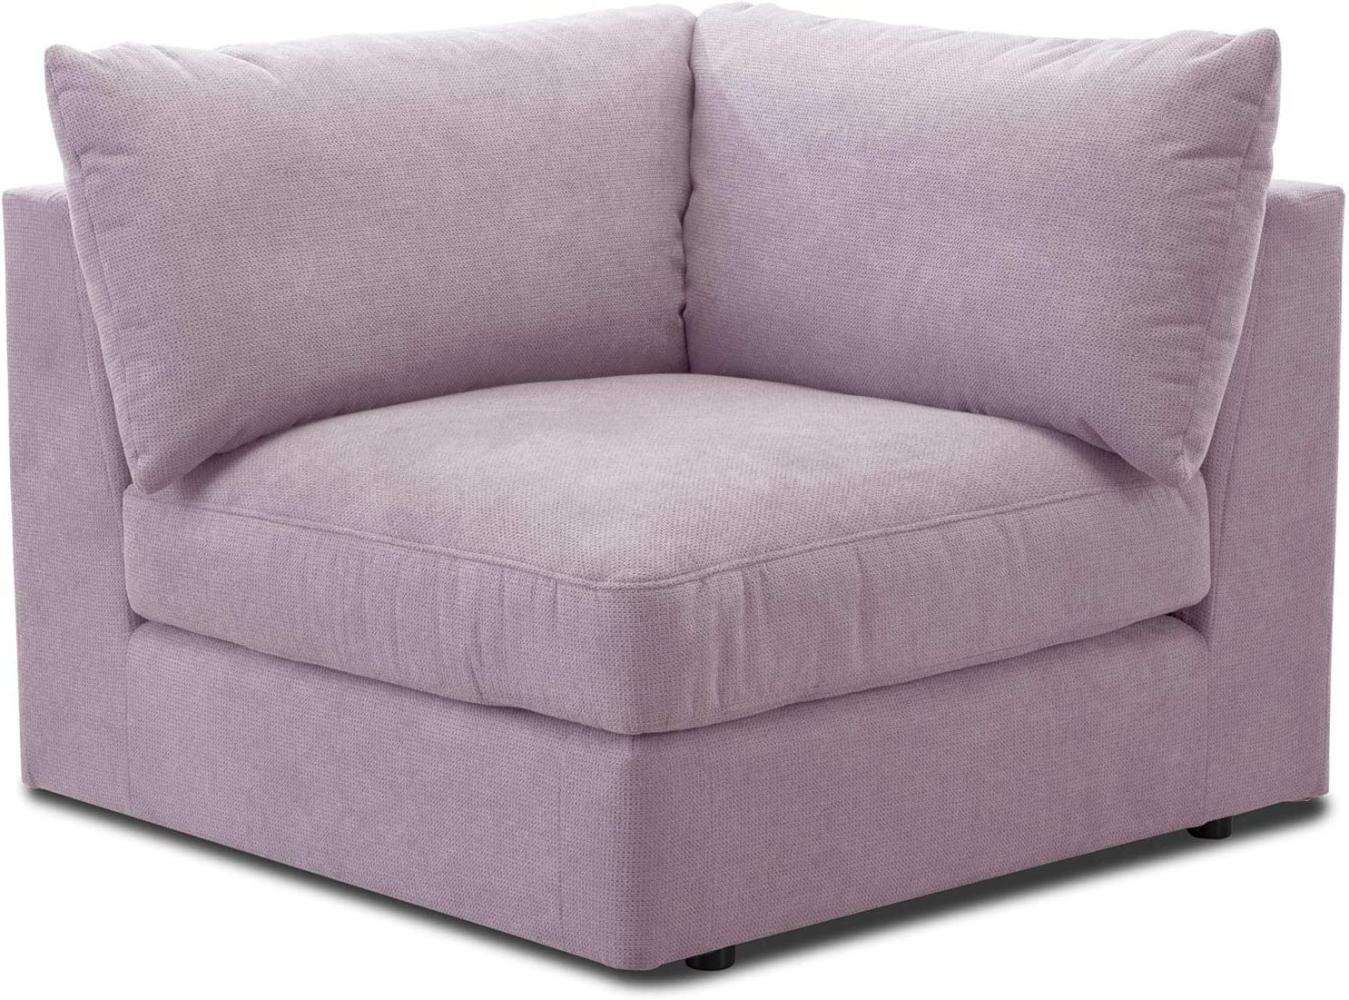 CAVADORE Sofa-Modul "Fiona" Spitzecke / Ecke für Wohnlandschaft oder XXL-Sessel / 107 x 90 x 107 / Webstoff flieder-lila Bild 1